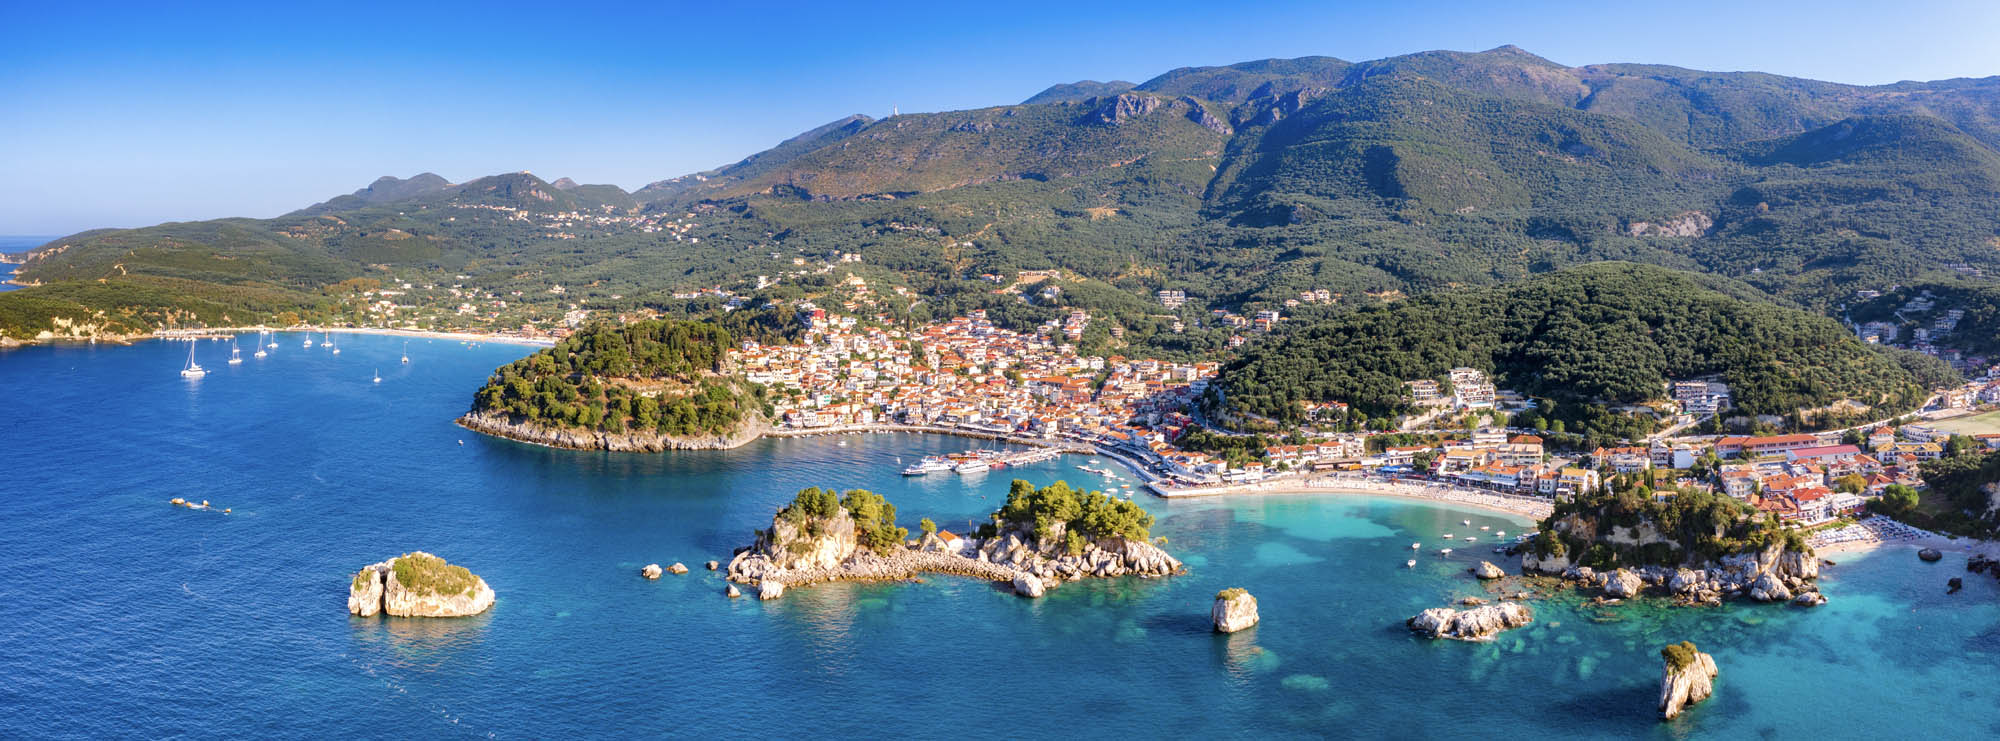 widok panoramiczny z bardzo daleka na Parge - piekne miasto na Peloponezie